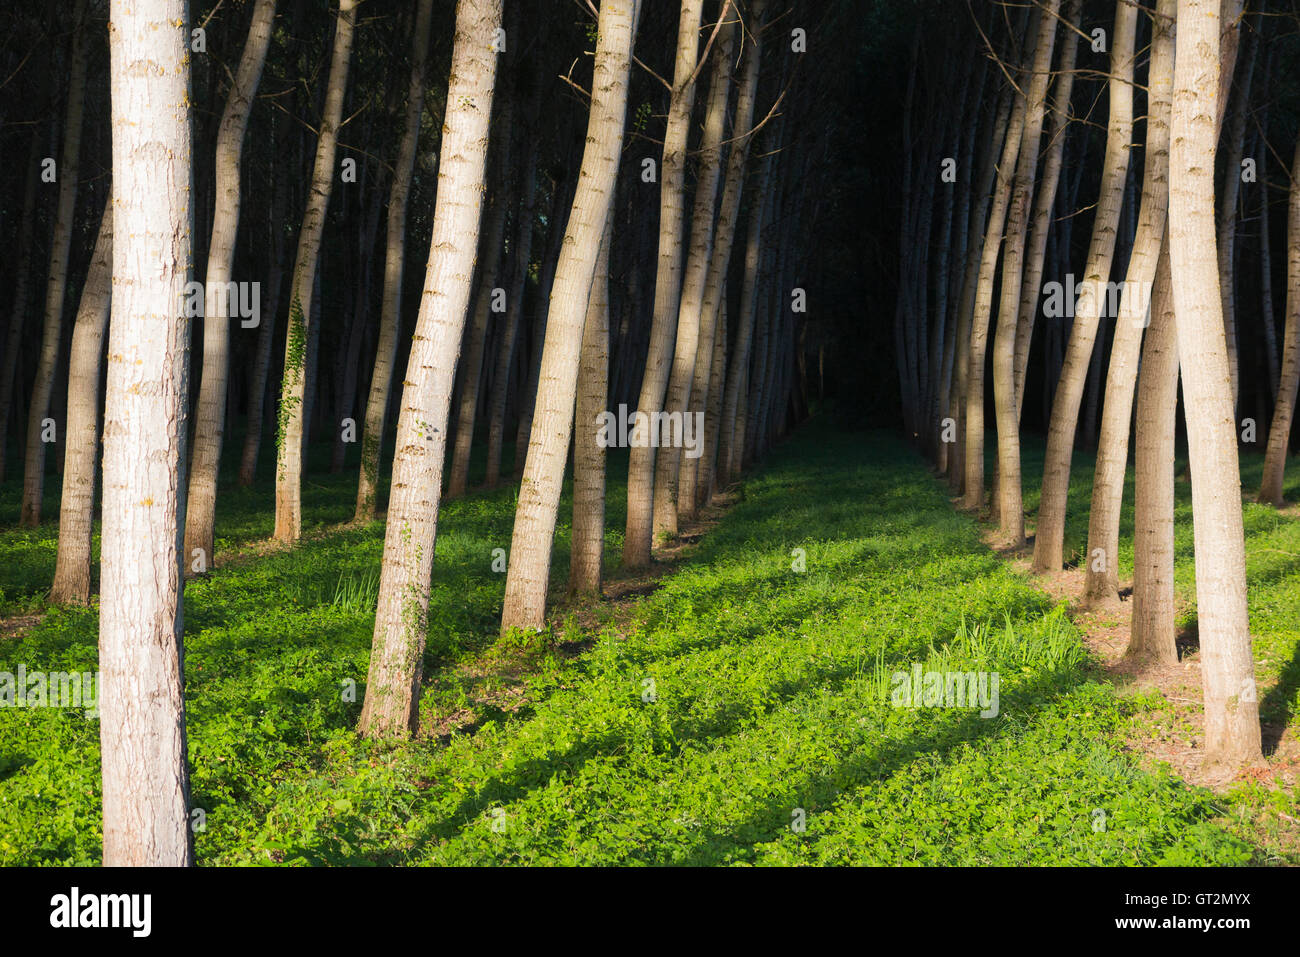 Álamos / troncos de árboles cultivados en ordenadas filas y columnas para la silvicultura / fuente sostenible de madera. Foto de stock